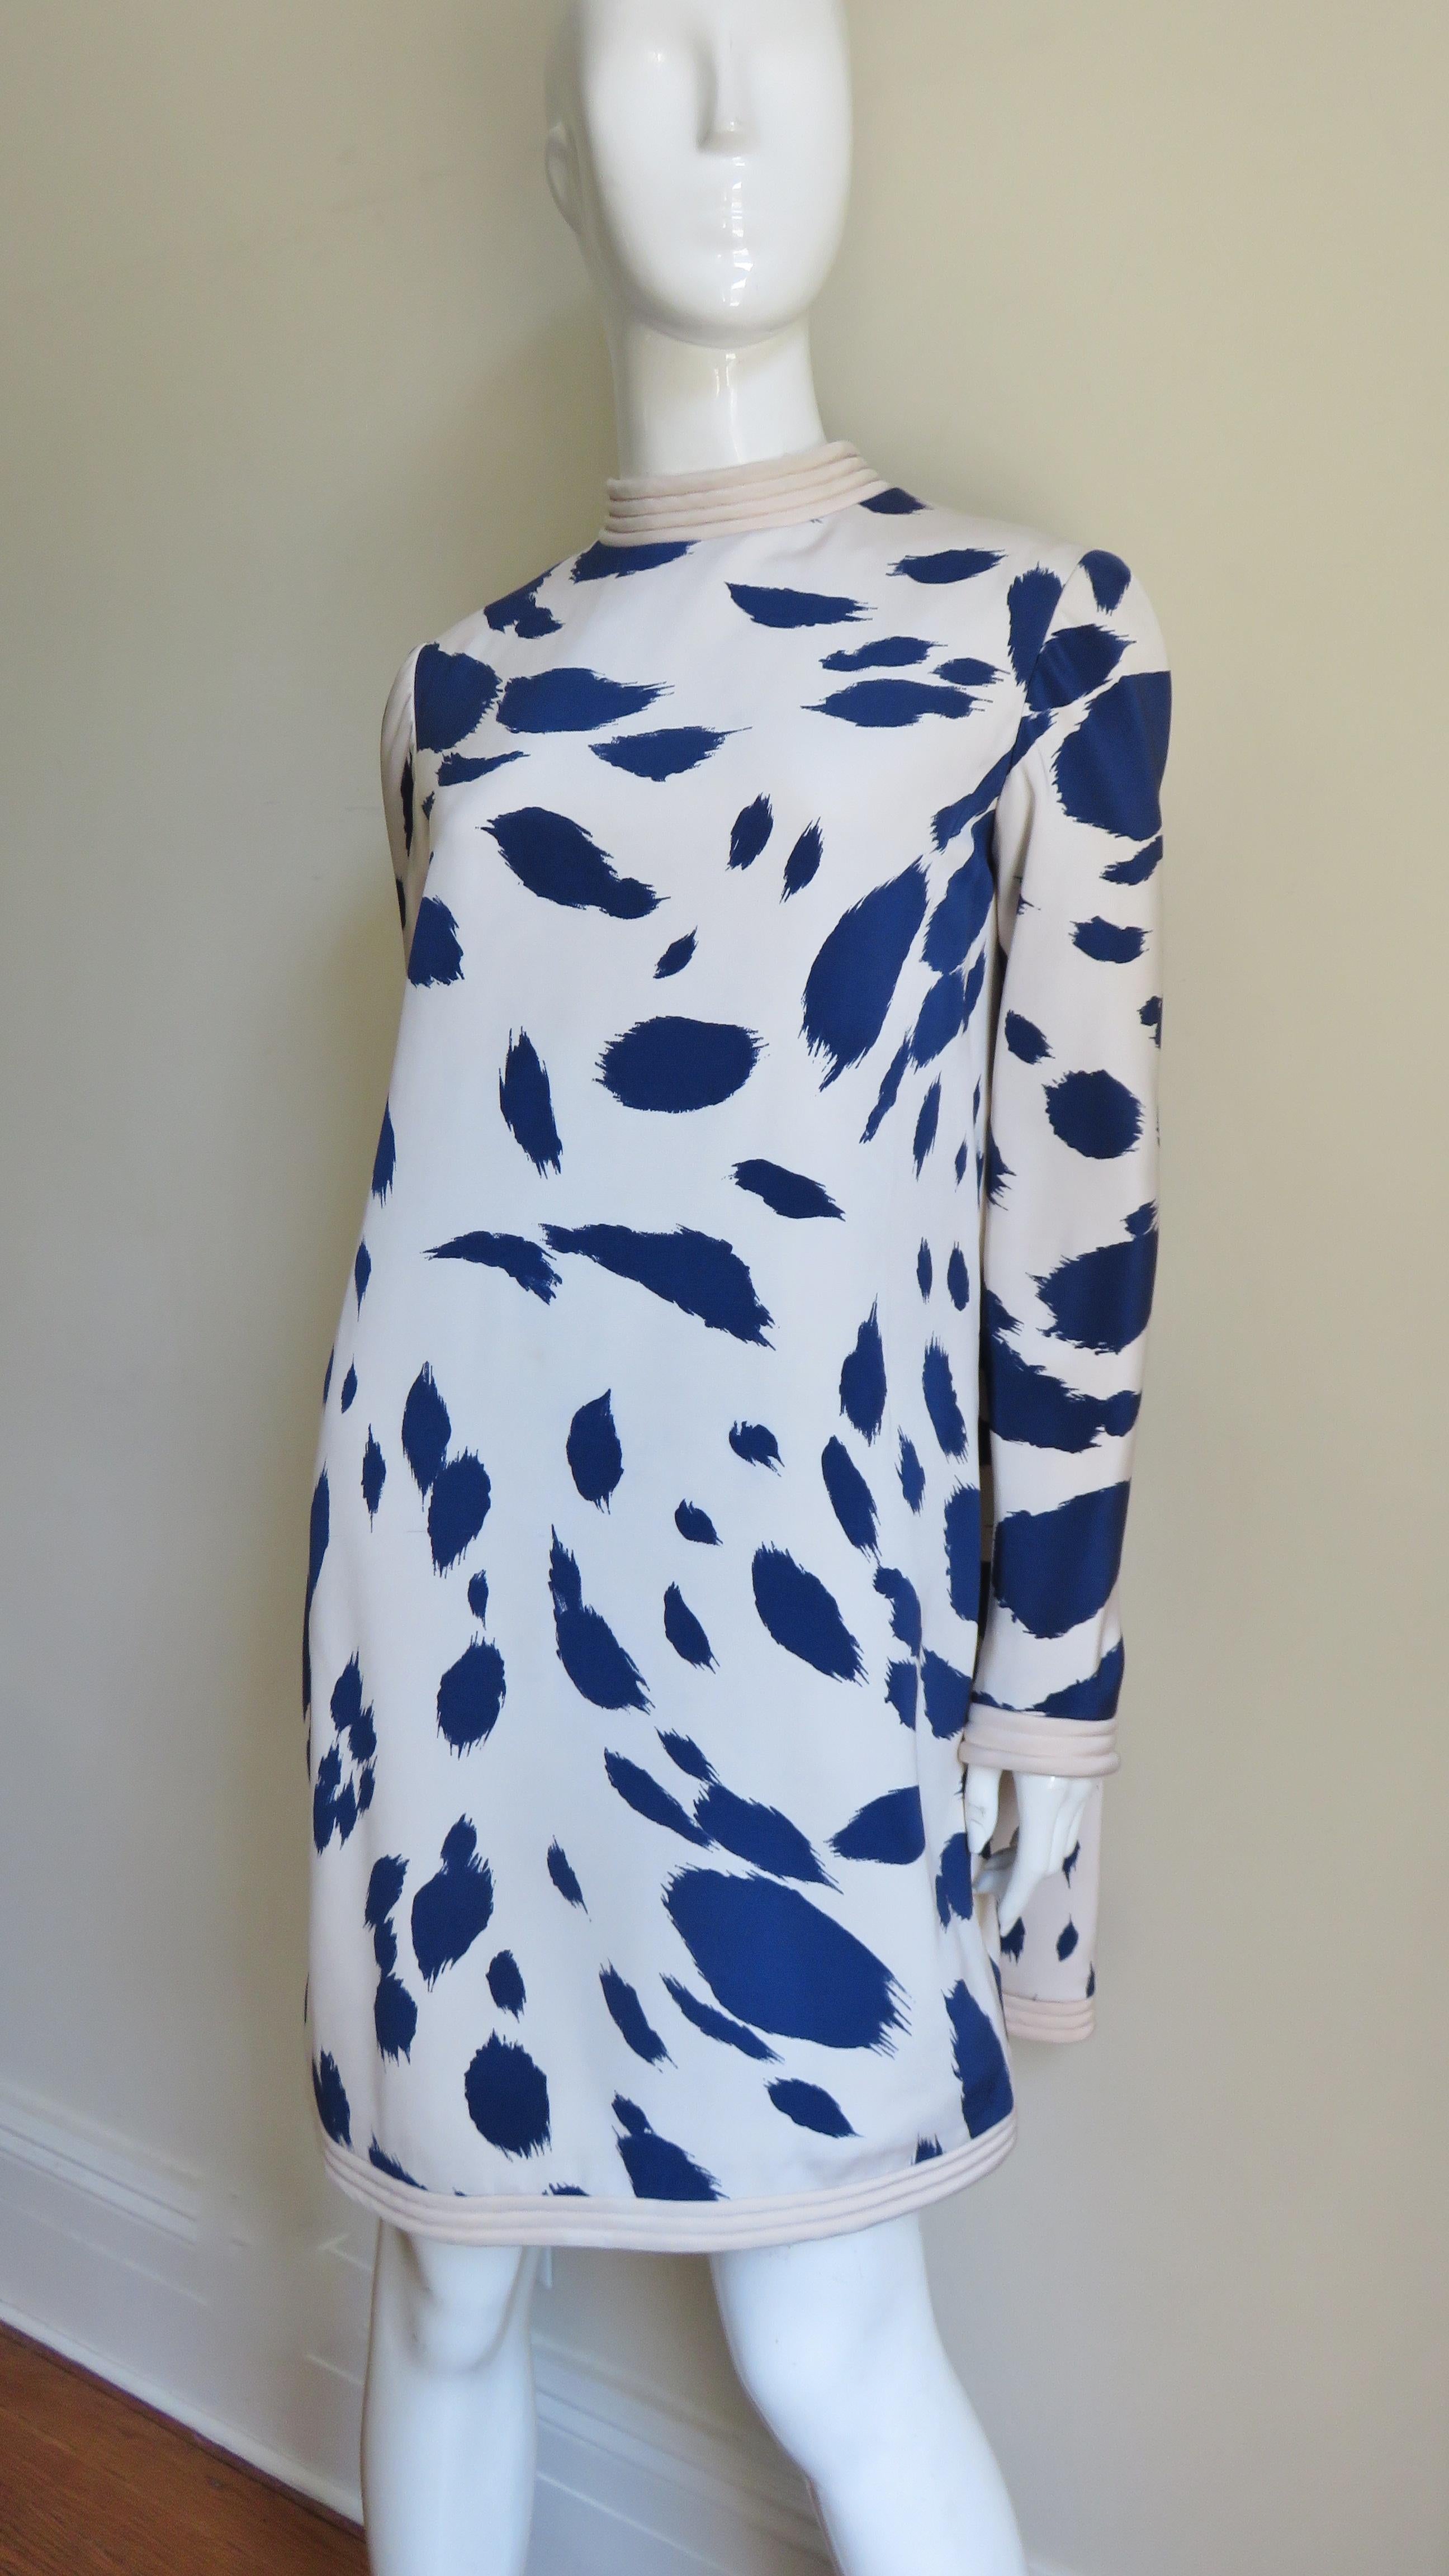 Ein unglaubliches Kleid von Pierre Cardin aus cremefarbener Seide mit abstrakten Formen in Marineblau.  Der Halsausschnitt, die Handgelenke und der Saum sind mit Reihen von Steppnähten auf unifarbenem Off-White hervorgehoben. Ein wunderschöner